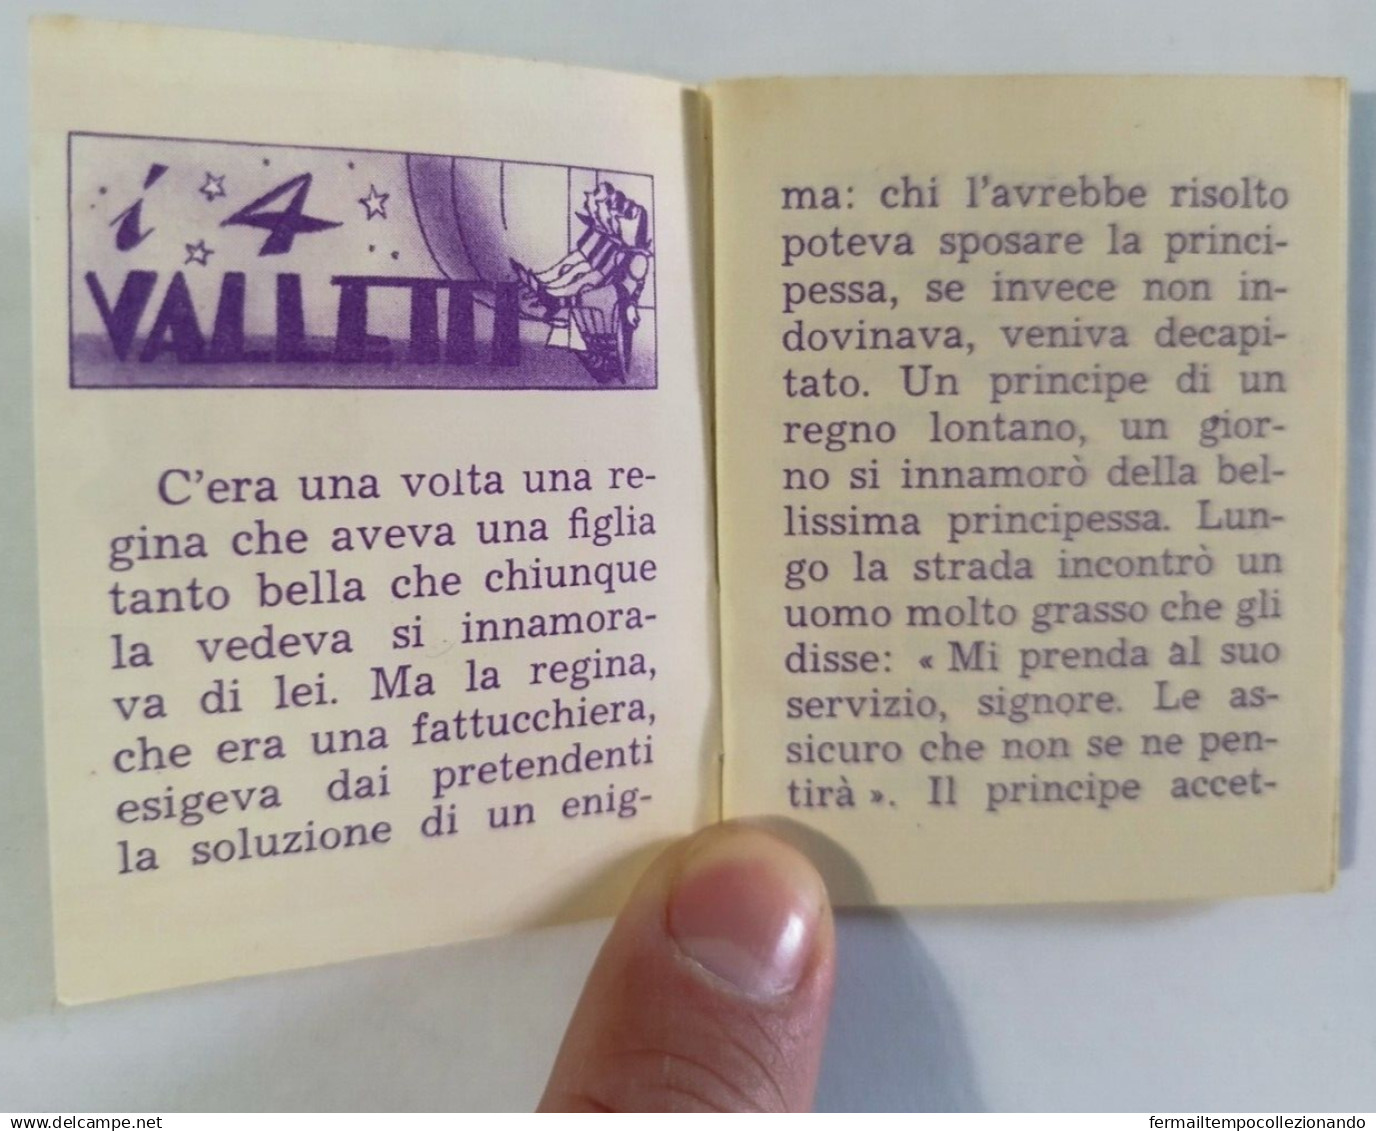 Bq11  Libretto Minifiabe I Quattro Valletti Editrice Vecchi 1952 N51 - Unclassified